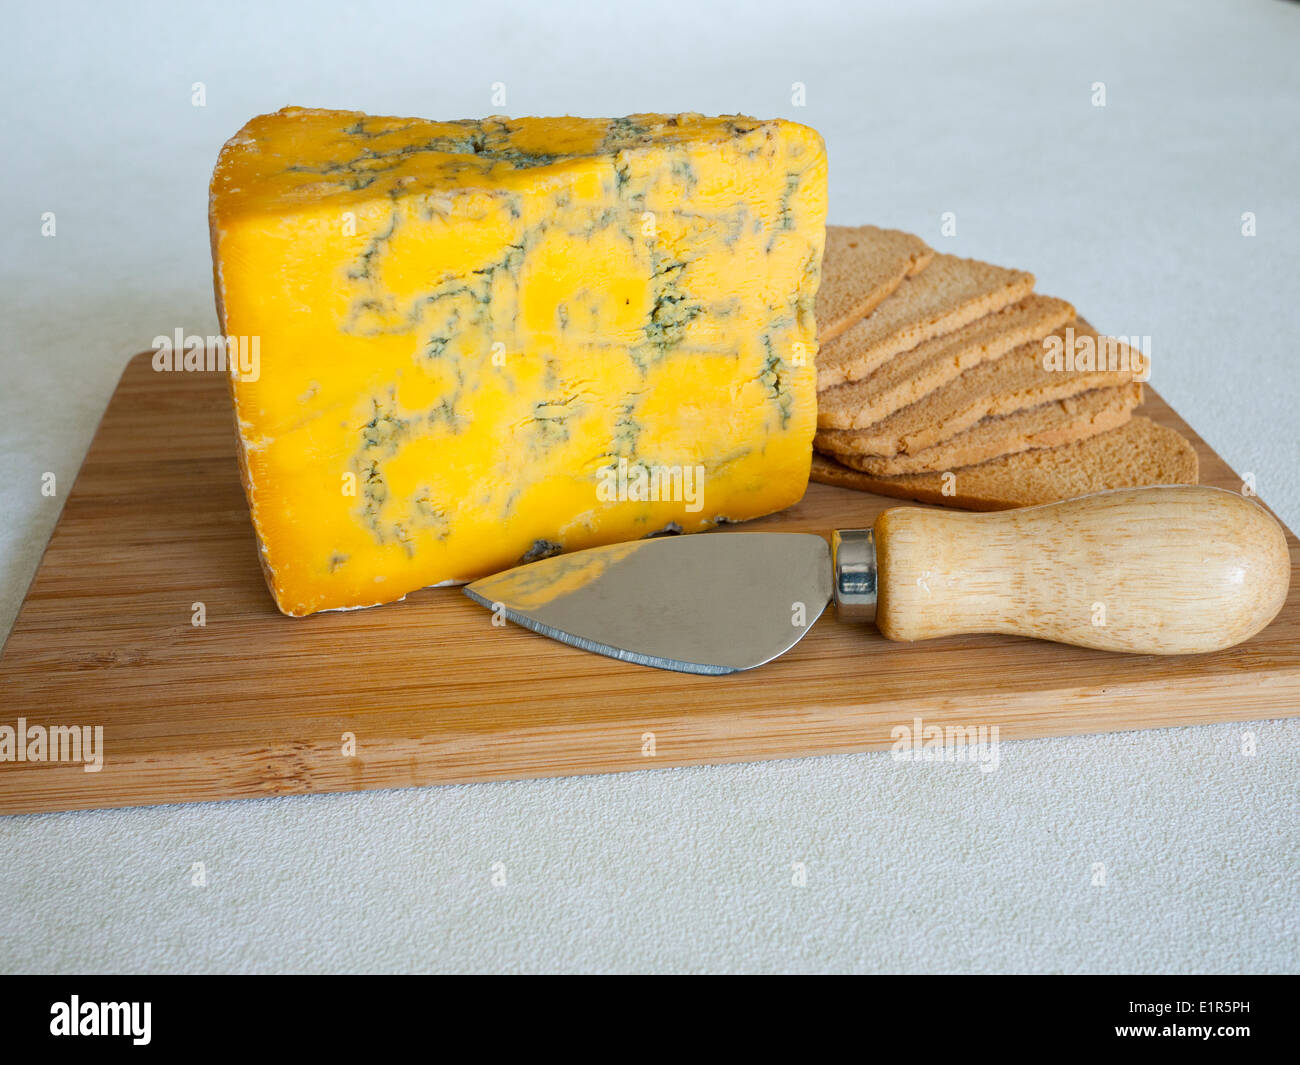 Blue Shropshire piena formaggio grasso sulla scheda di formaggio con wheatbread tostato e il coltello. Foto Stock